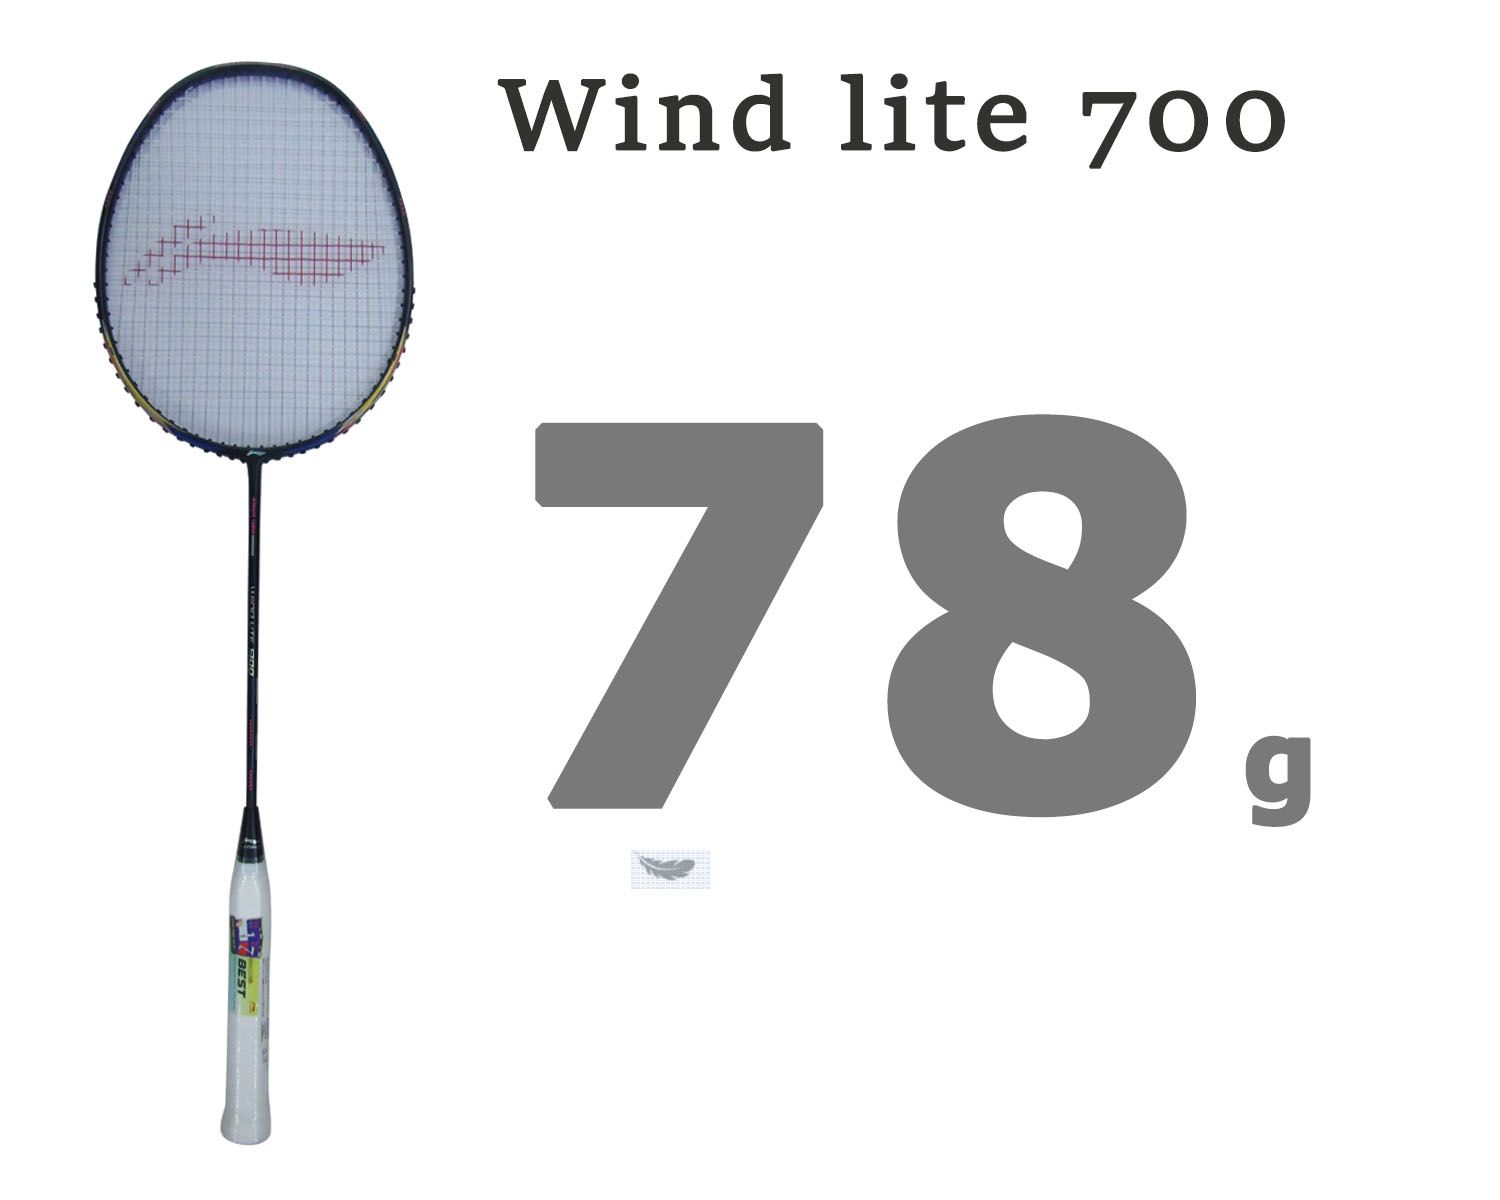 Li Ning Wind Lite 700 Badminton Racket